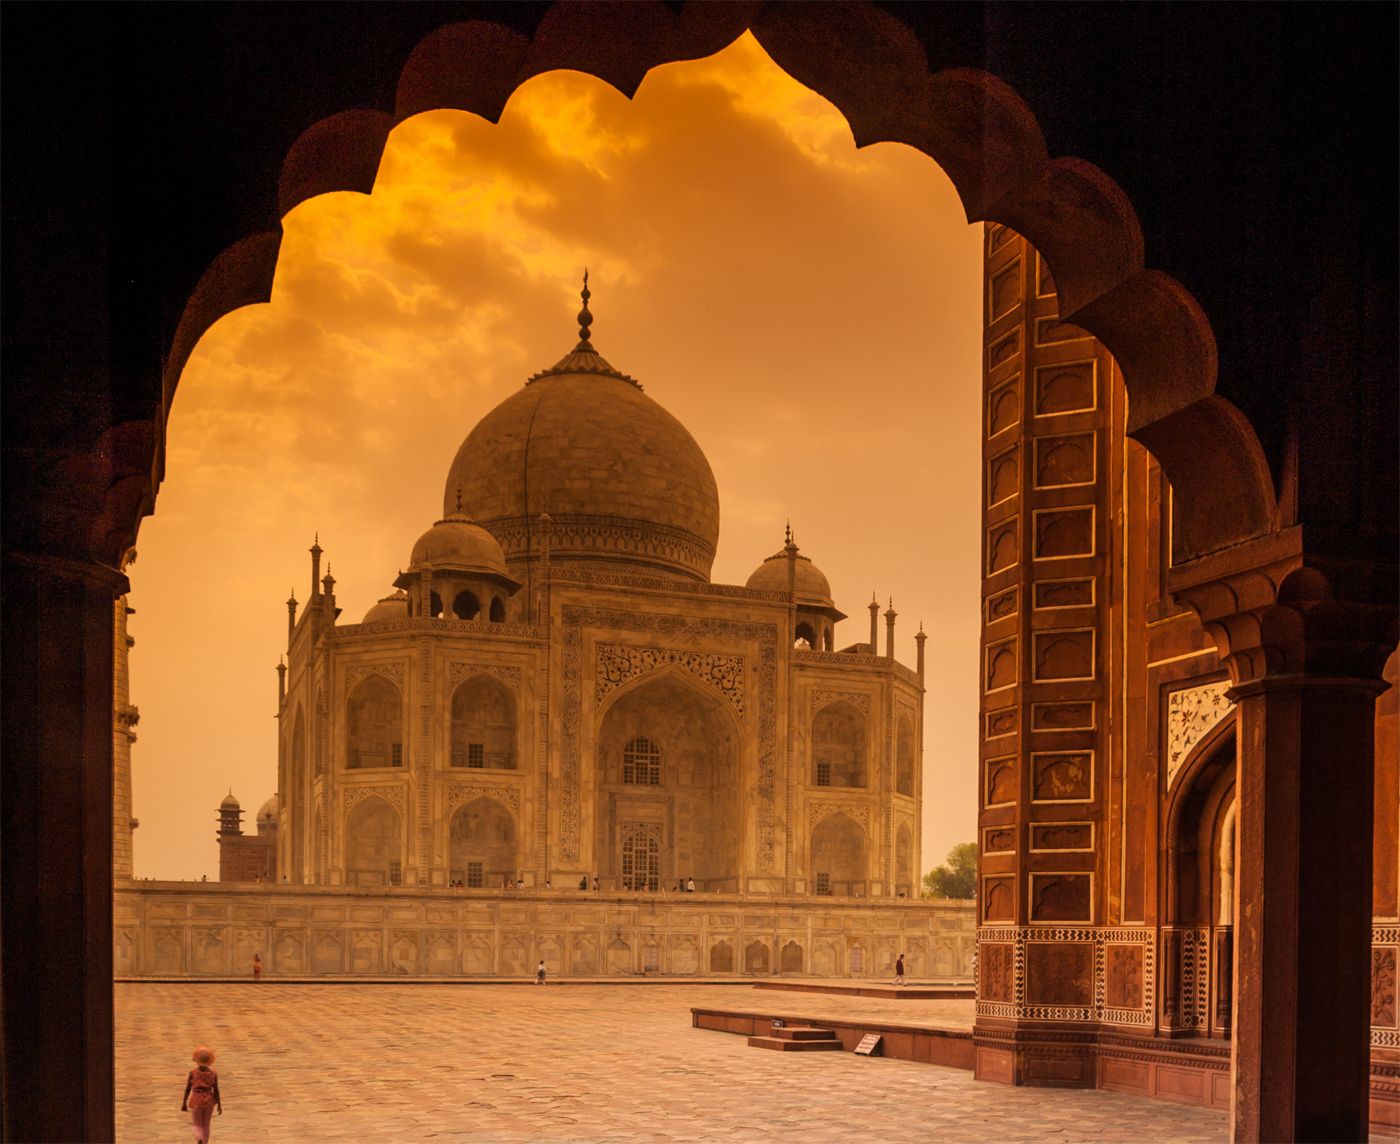 The Beauty of the Taj Mahal